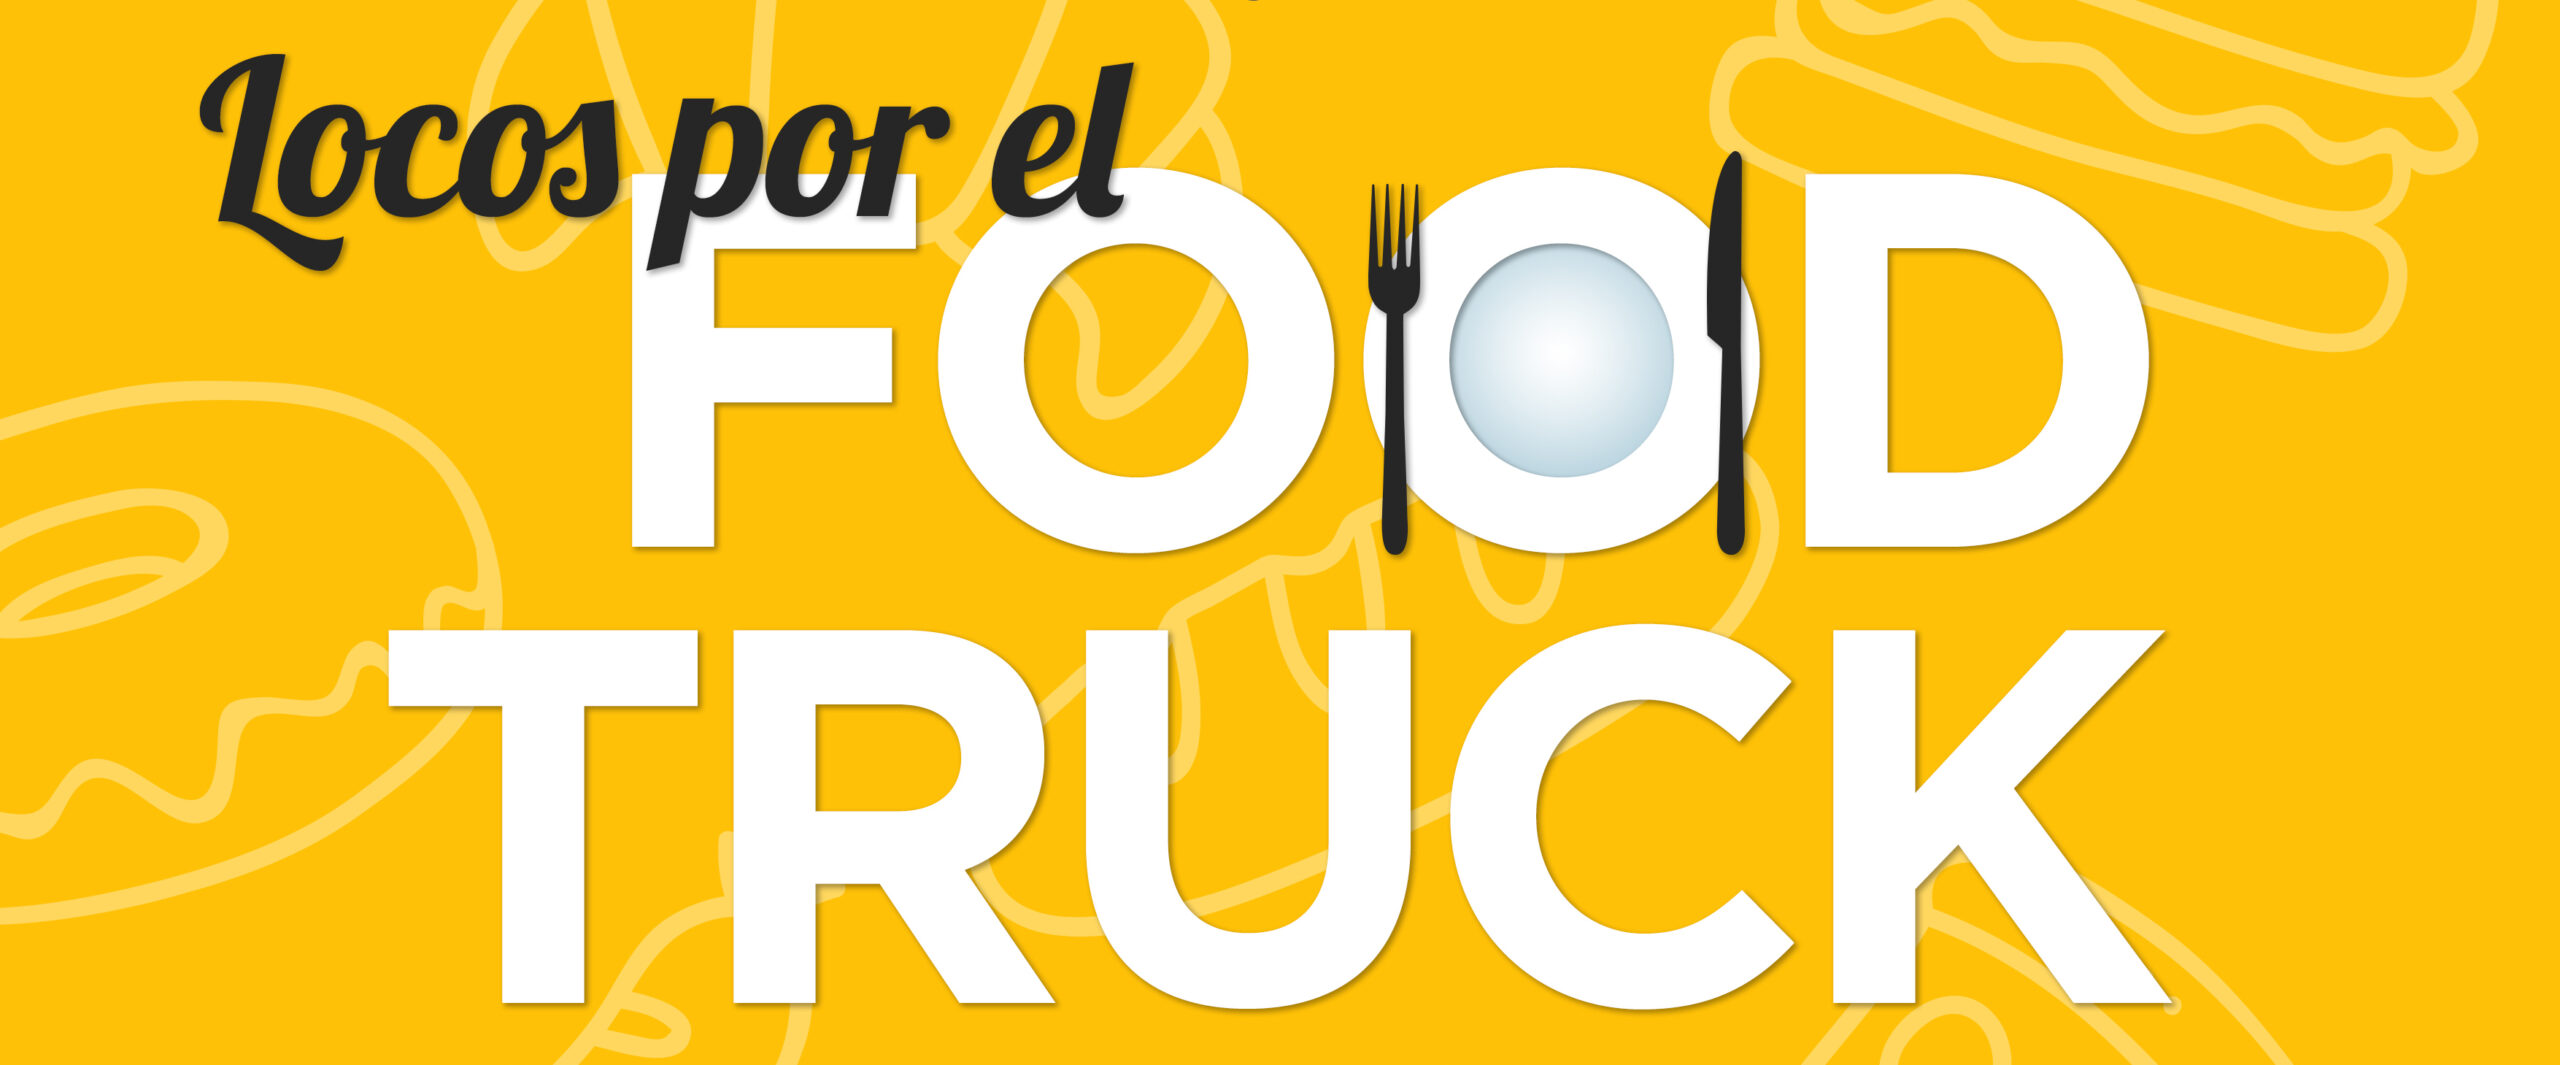 Estrella Galicia cerveza oficial "Locos por el food truck"